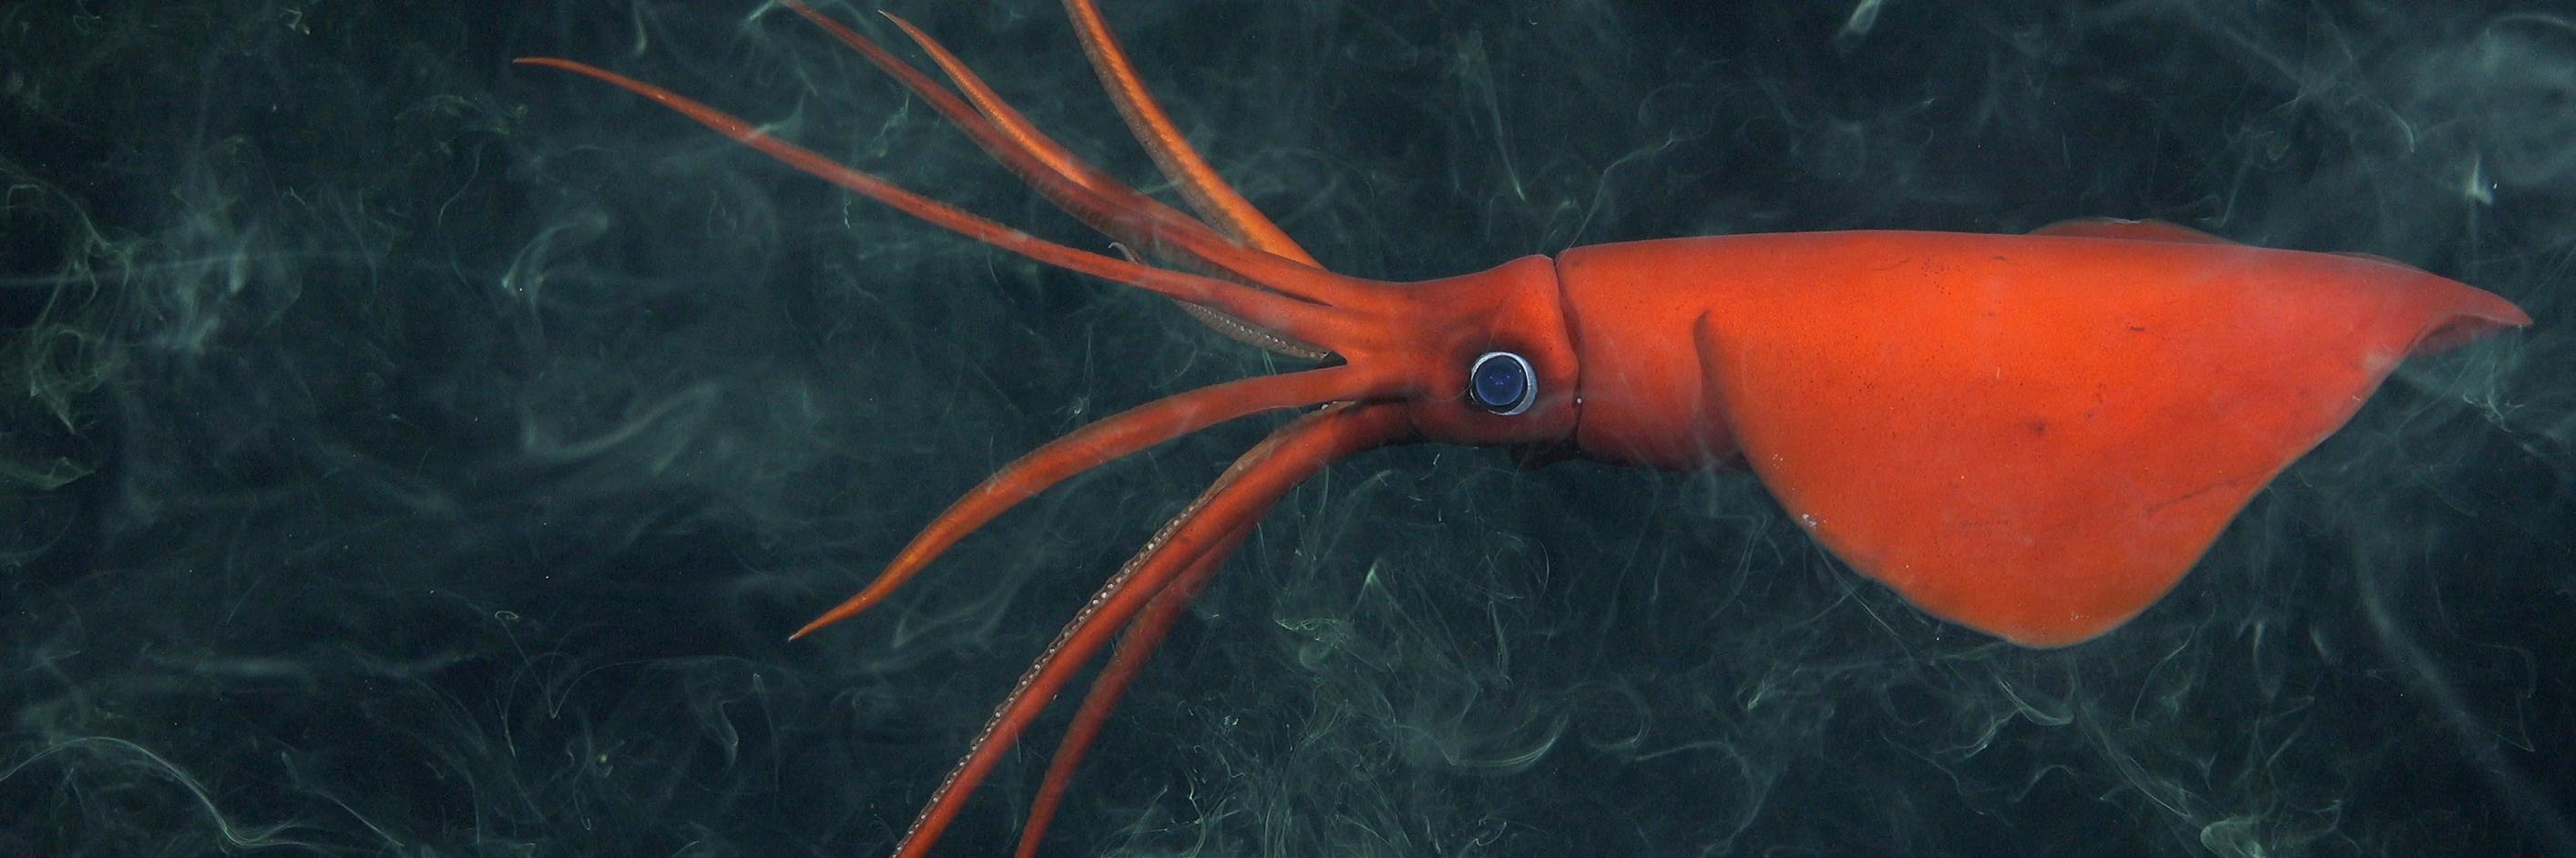 Calamar del género Mastigoteuthis envuelto en su tinta defensiva. Fue observado en el monte #17 a 1103 metros de profundidad.